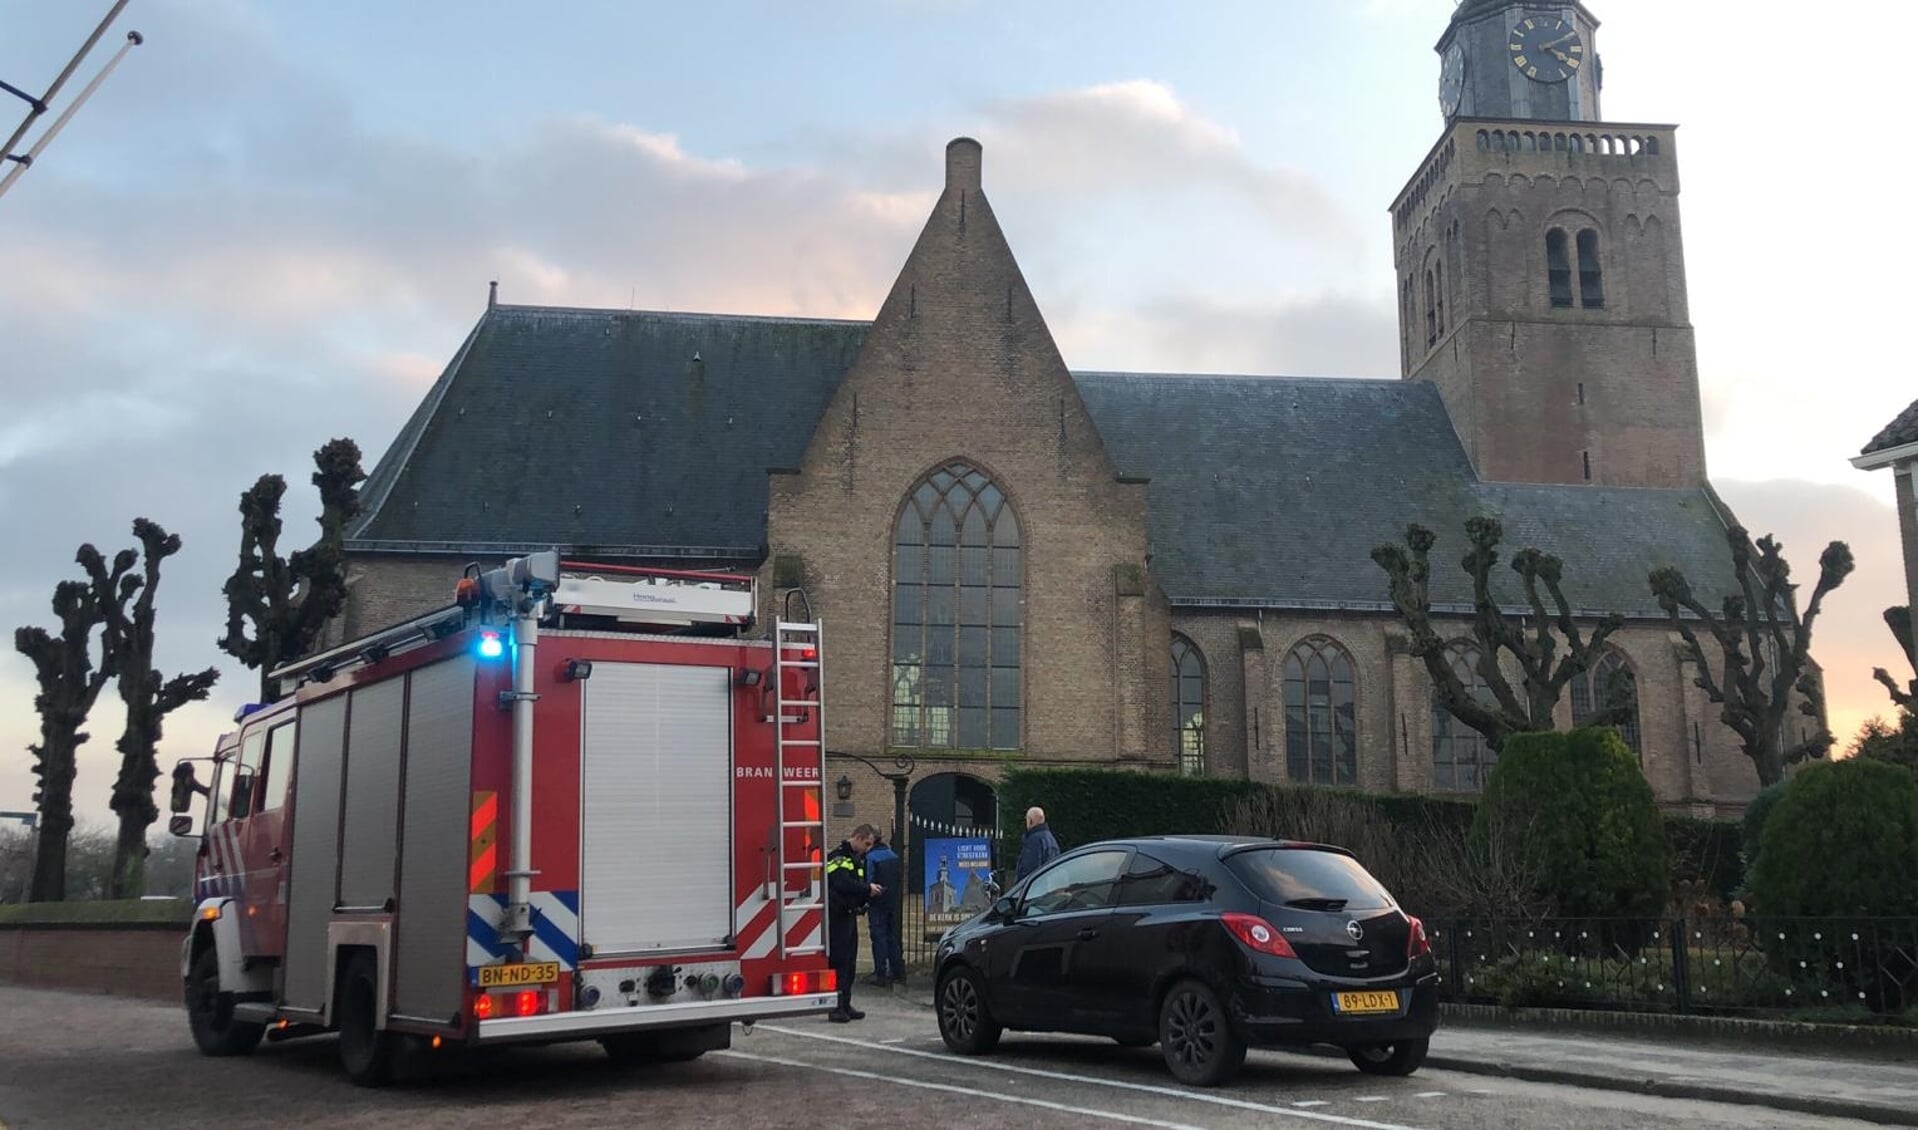 • Brandmelding kerk Streefkerk bleek loos alarm